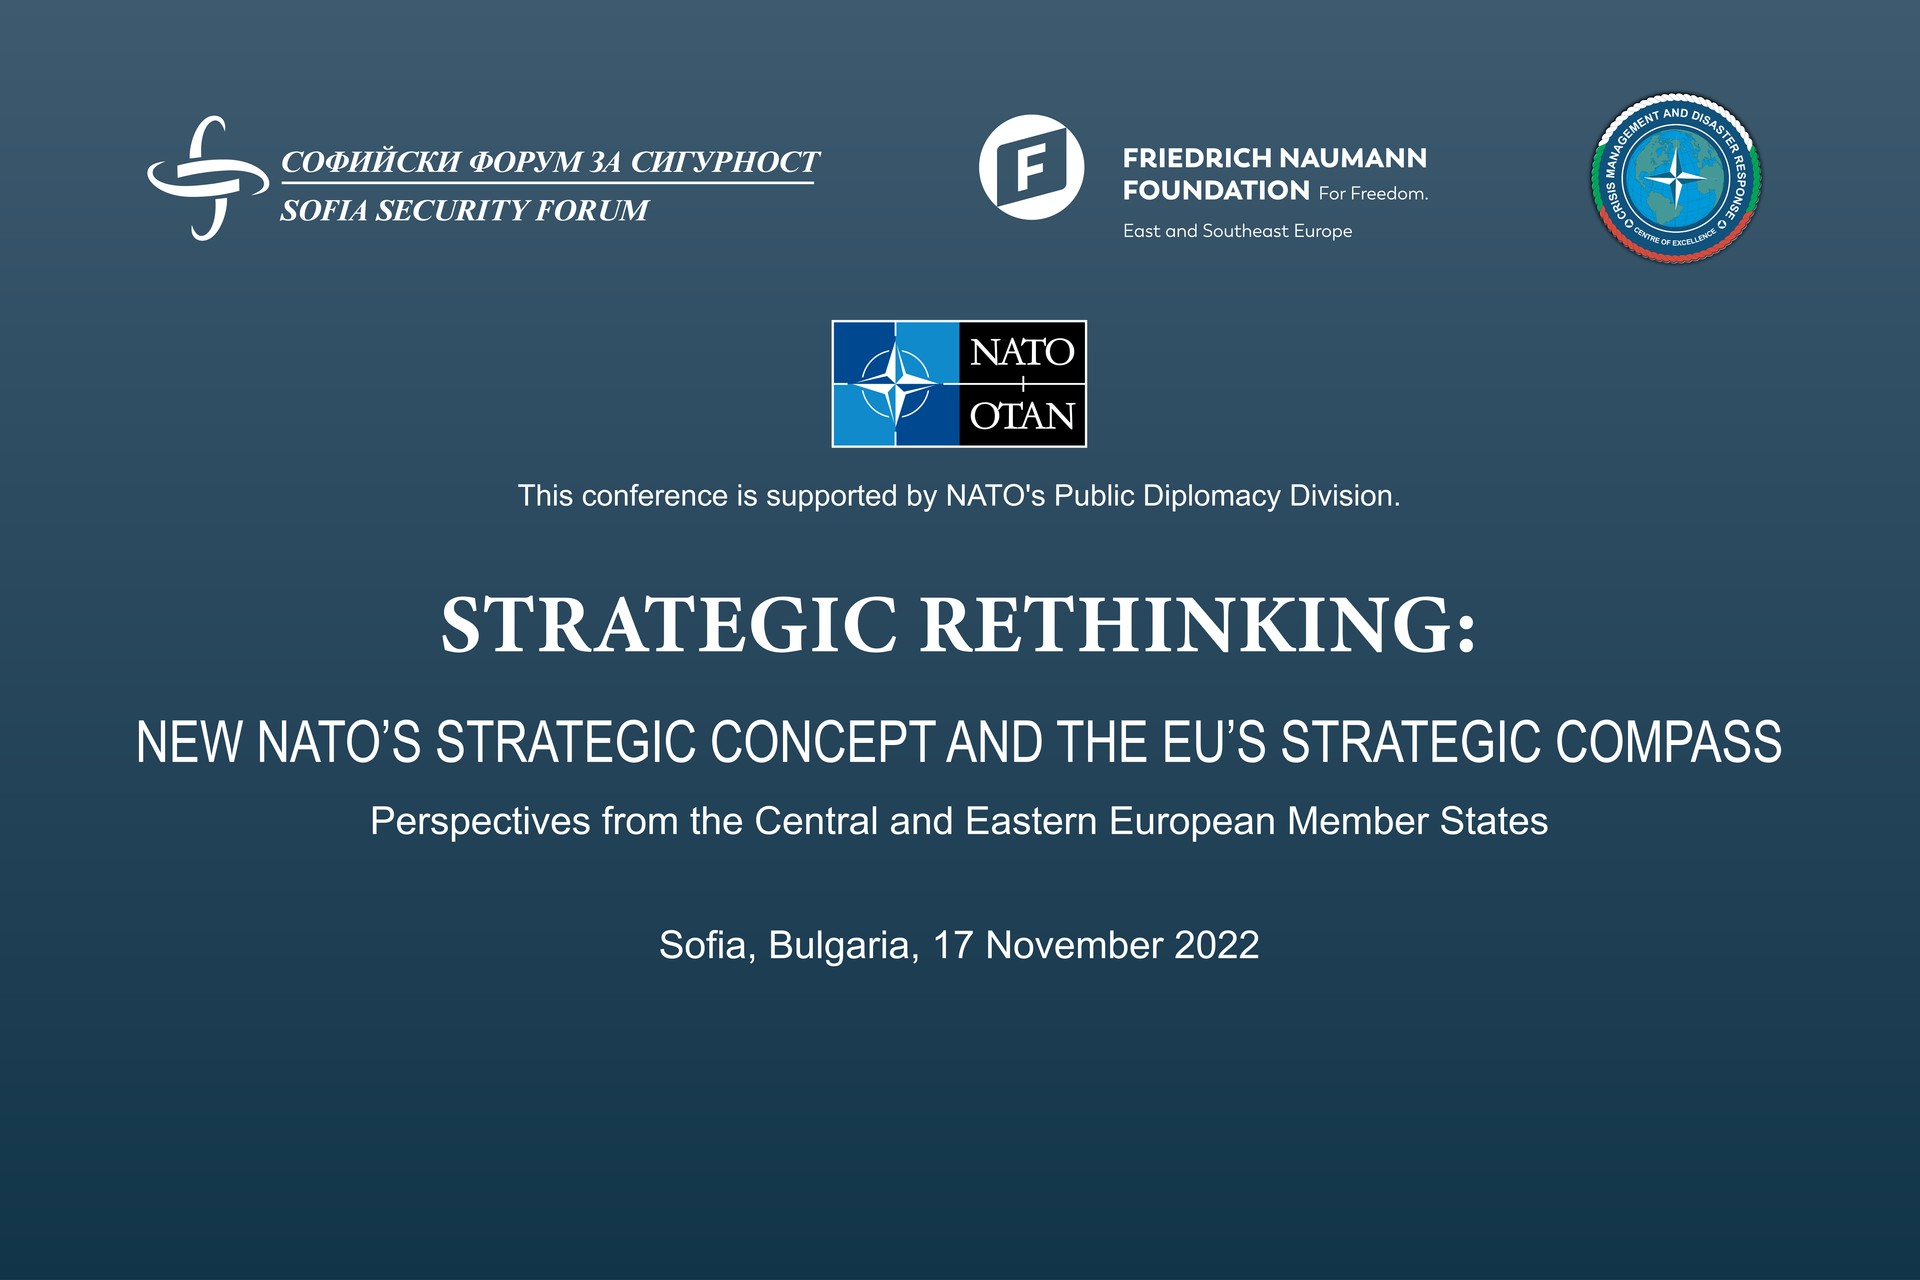 STRATEGIC RETHINKING - NEW NATO’S STRATEGIC CONCEPT AND THE EU’S  STRATEGIC COMPASS